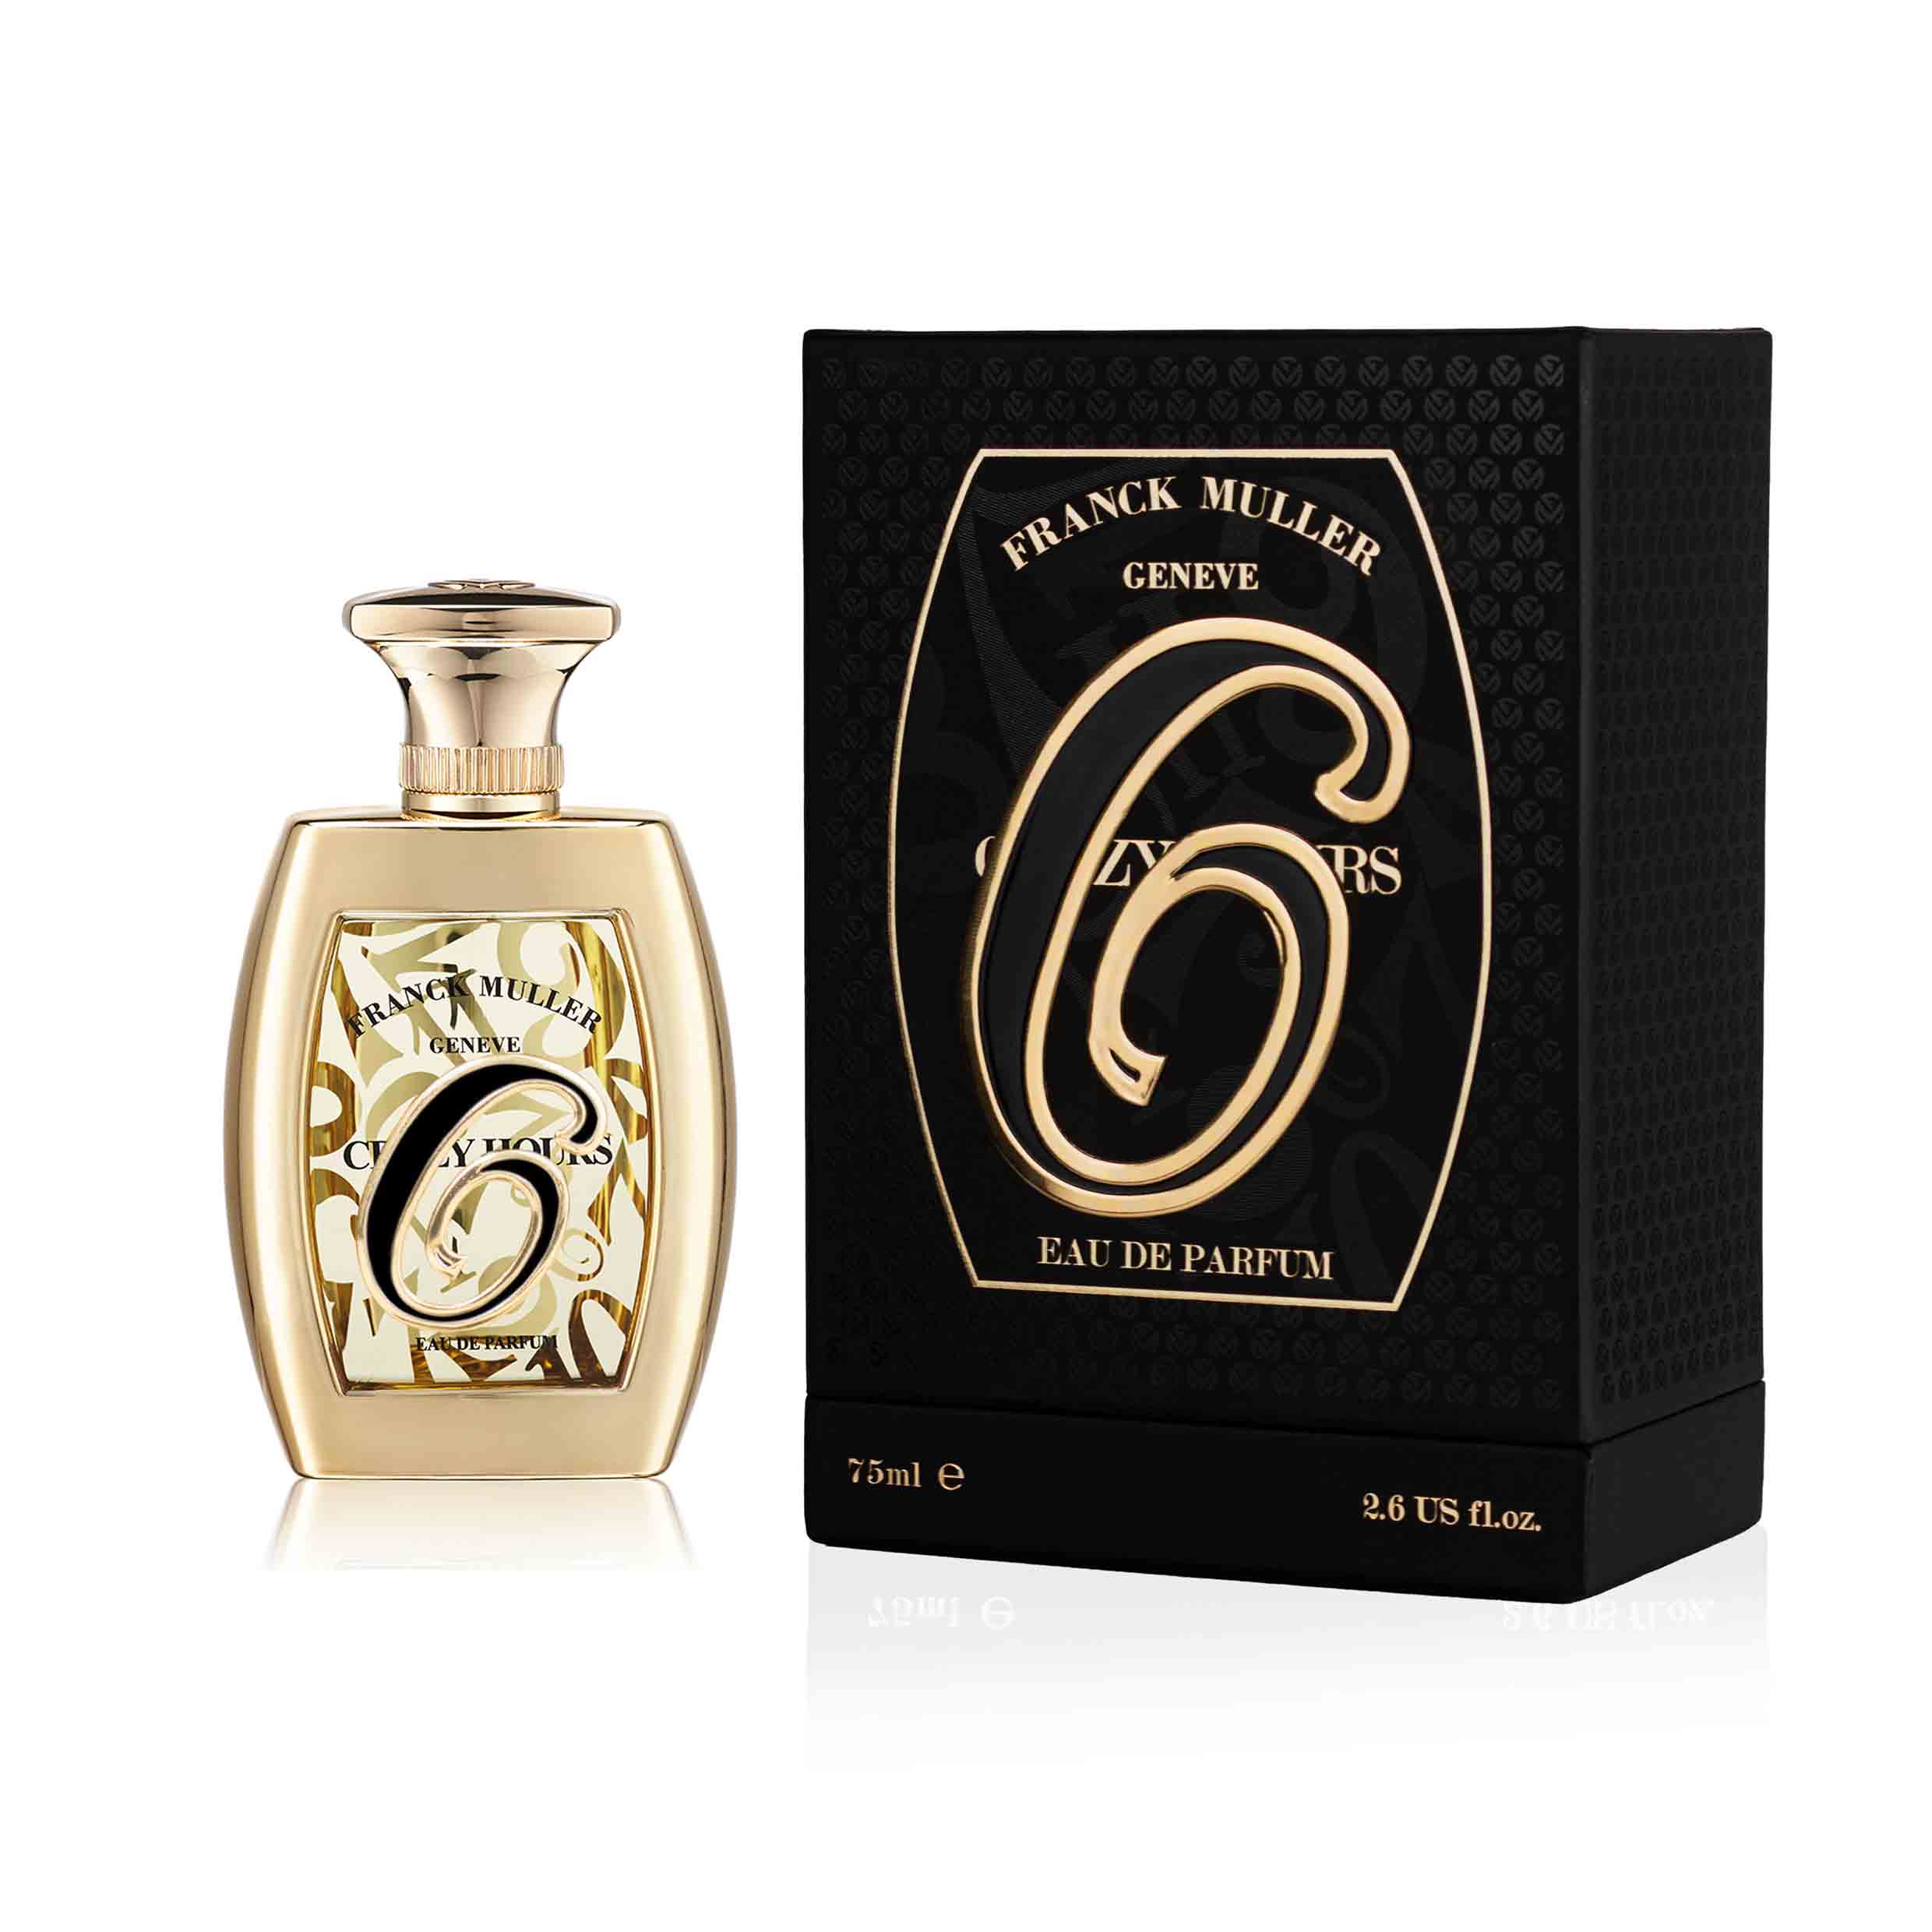 Crazy Hours 6 Eau de Parfum 75ml Bottle and Box by Franck Muller Perfumes